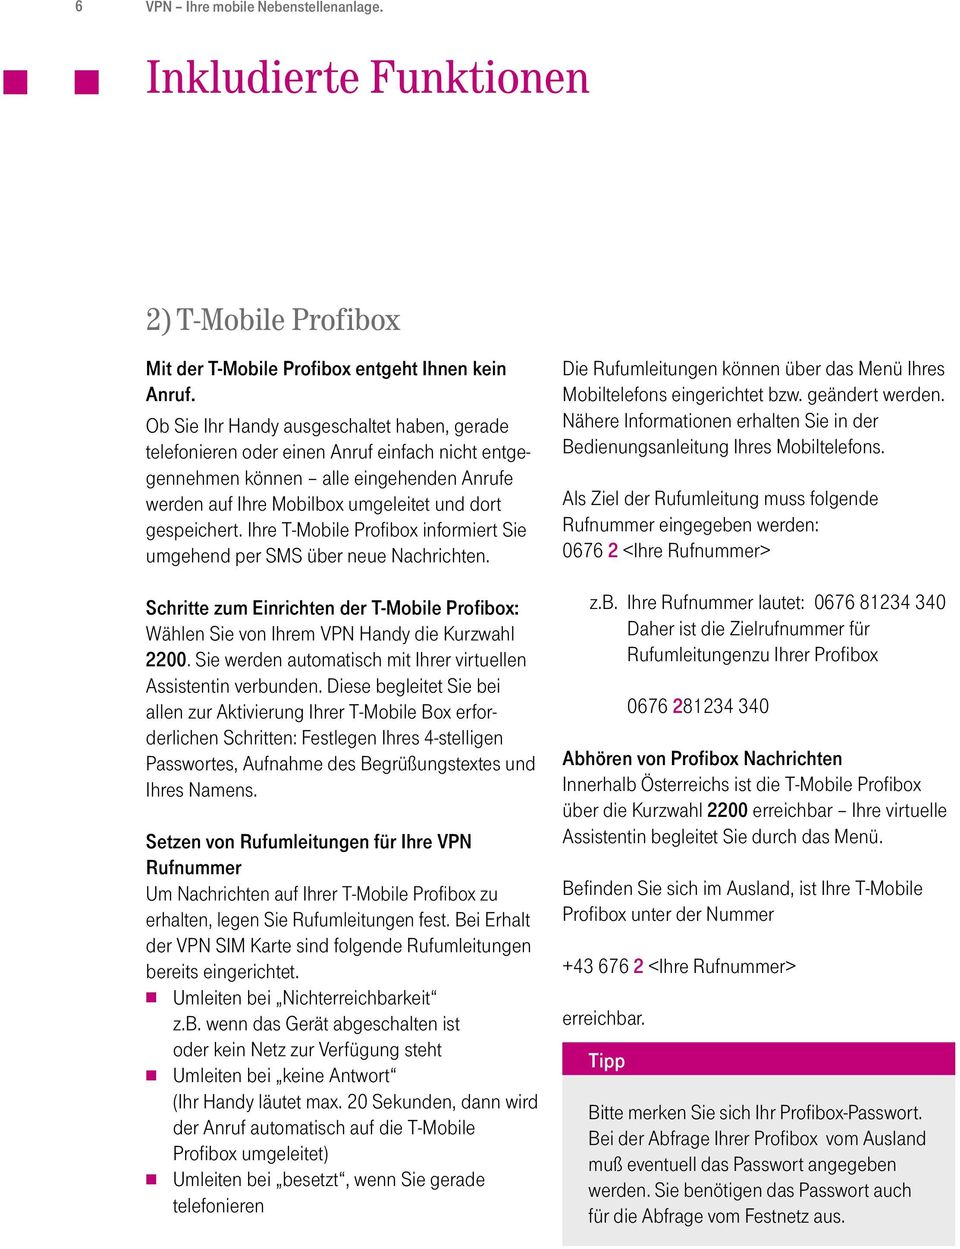 Ihre T-Mobile Profibox informiert Sie umgehend per SMS über neue Nachrichten. Schritte zum Einrichten der T-Mobile Profibox: Wählen Sie von Ihrem VPN Handy die Kurzwahl 2200.